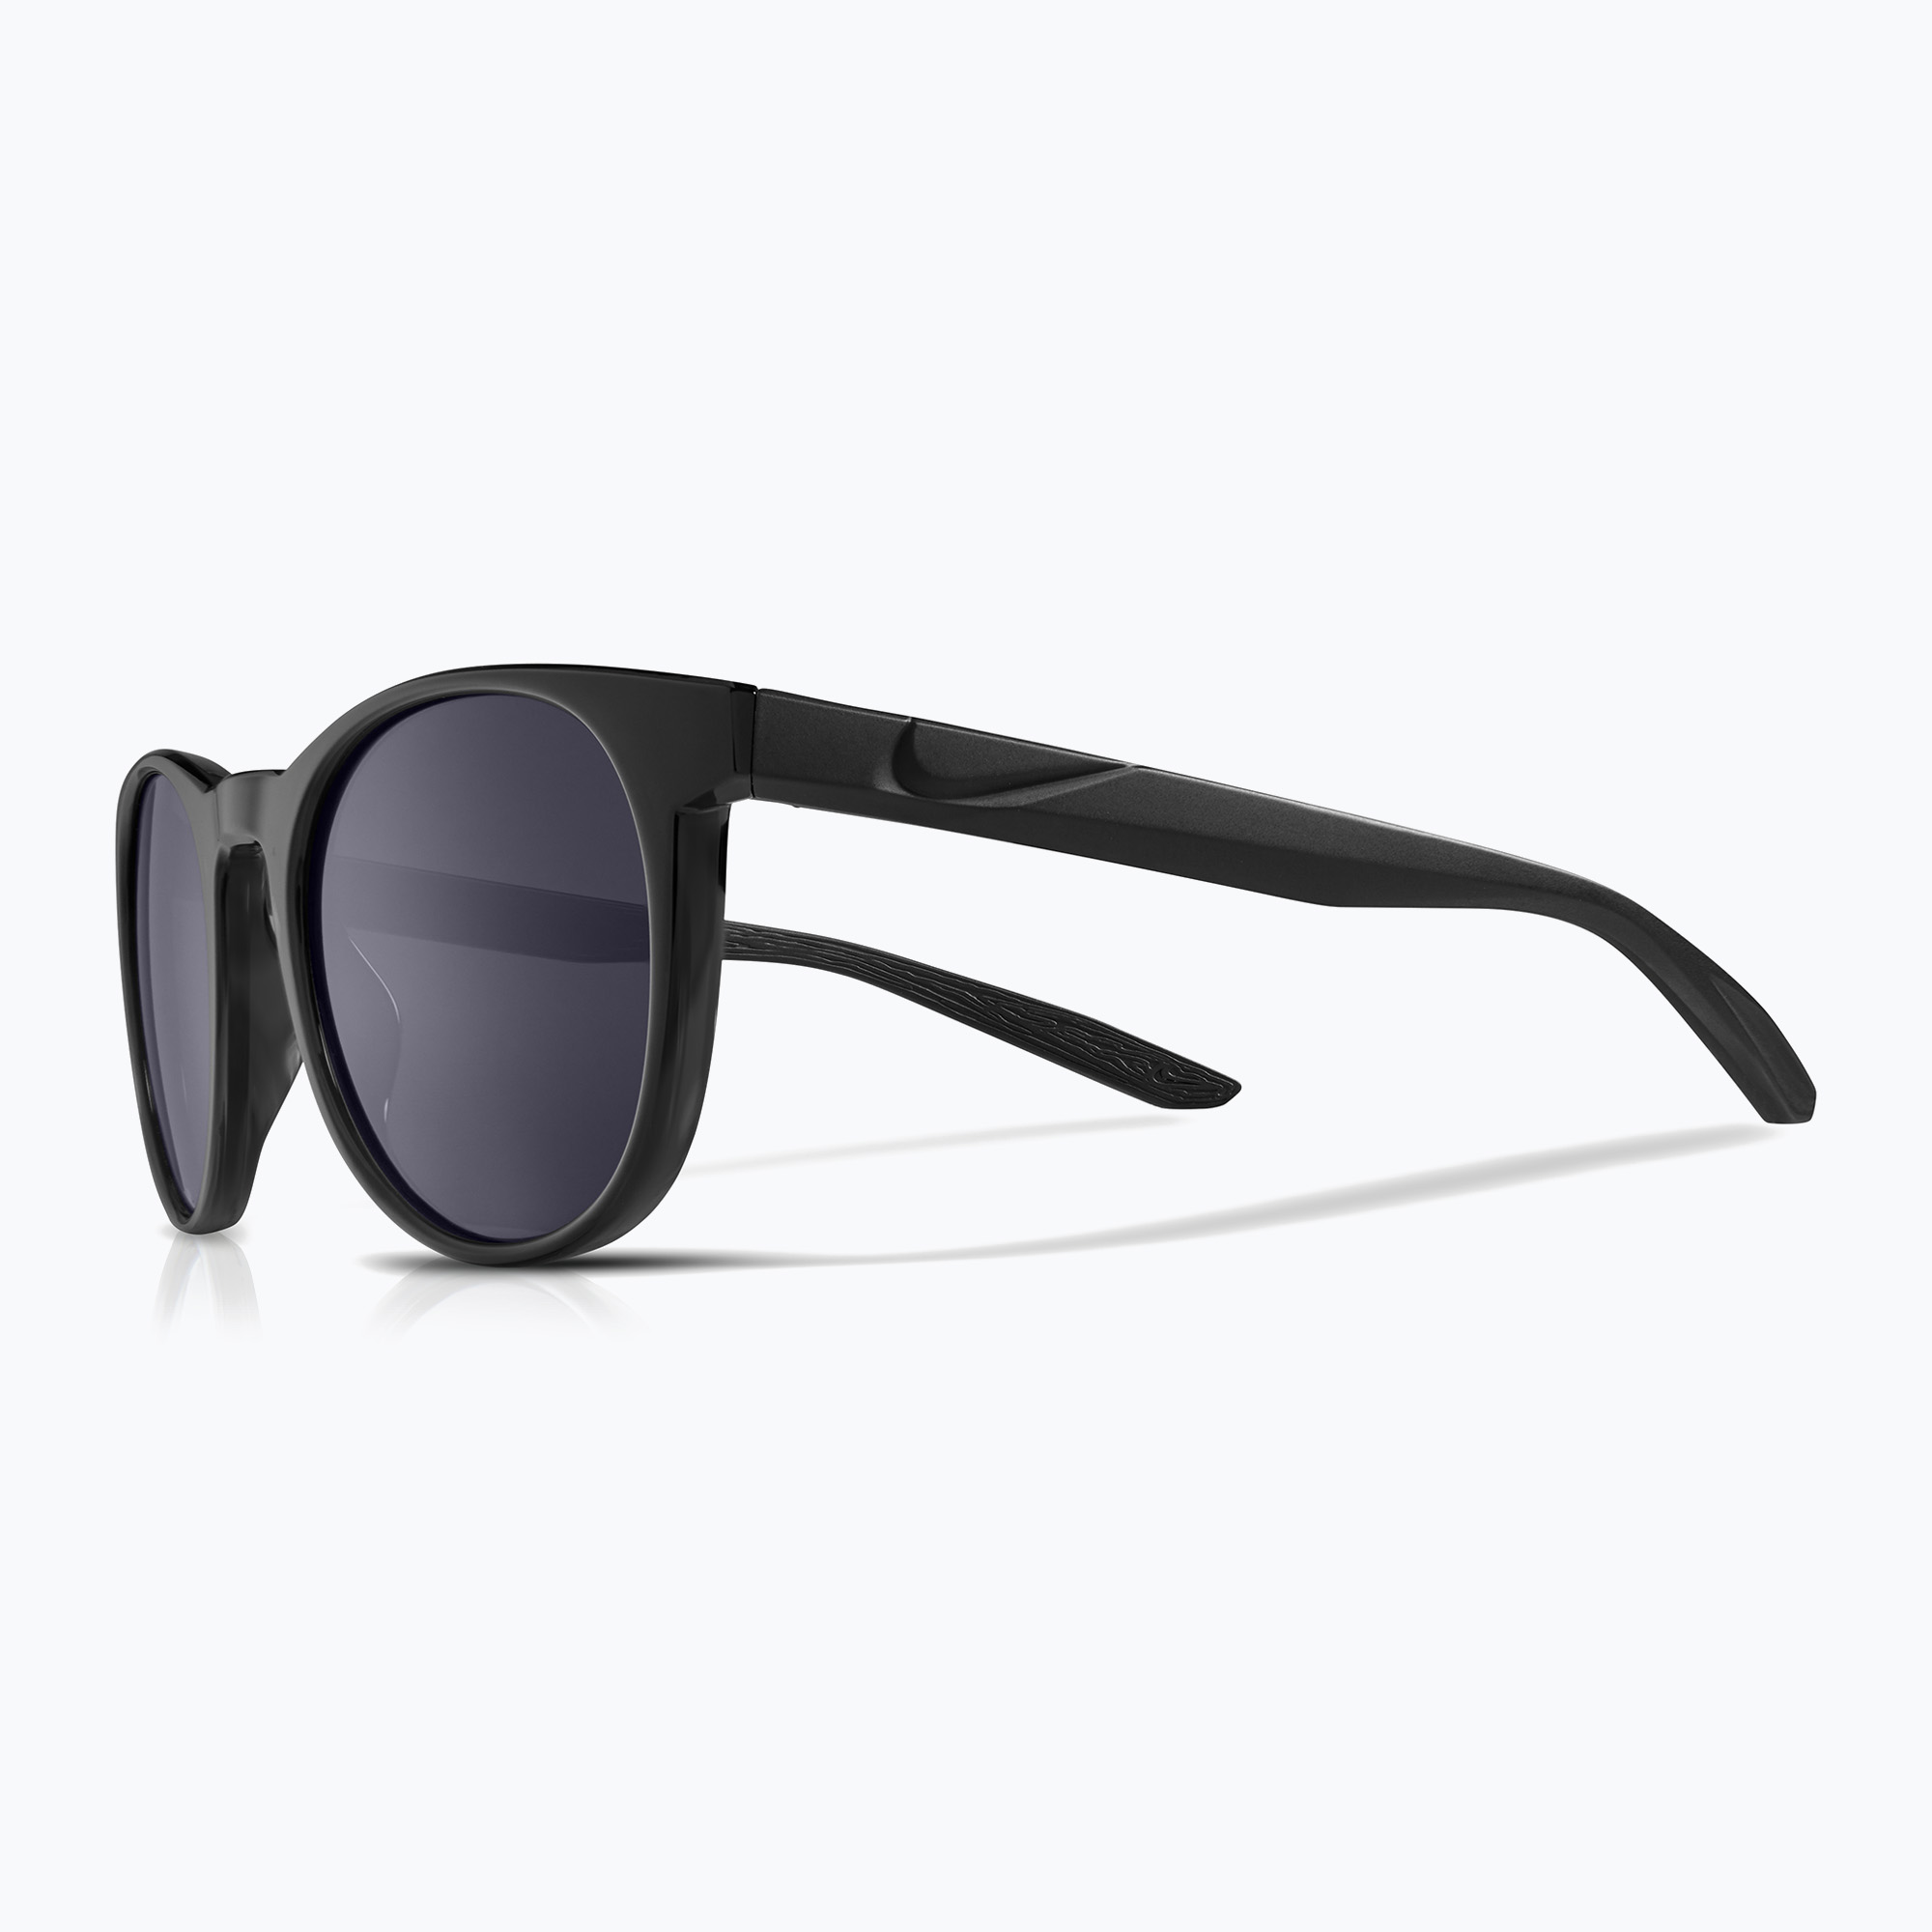 Слънчеви очила Nike Horizon Ascent black/dark grey